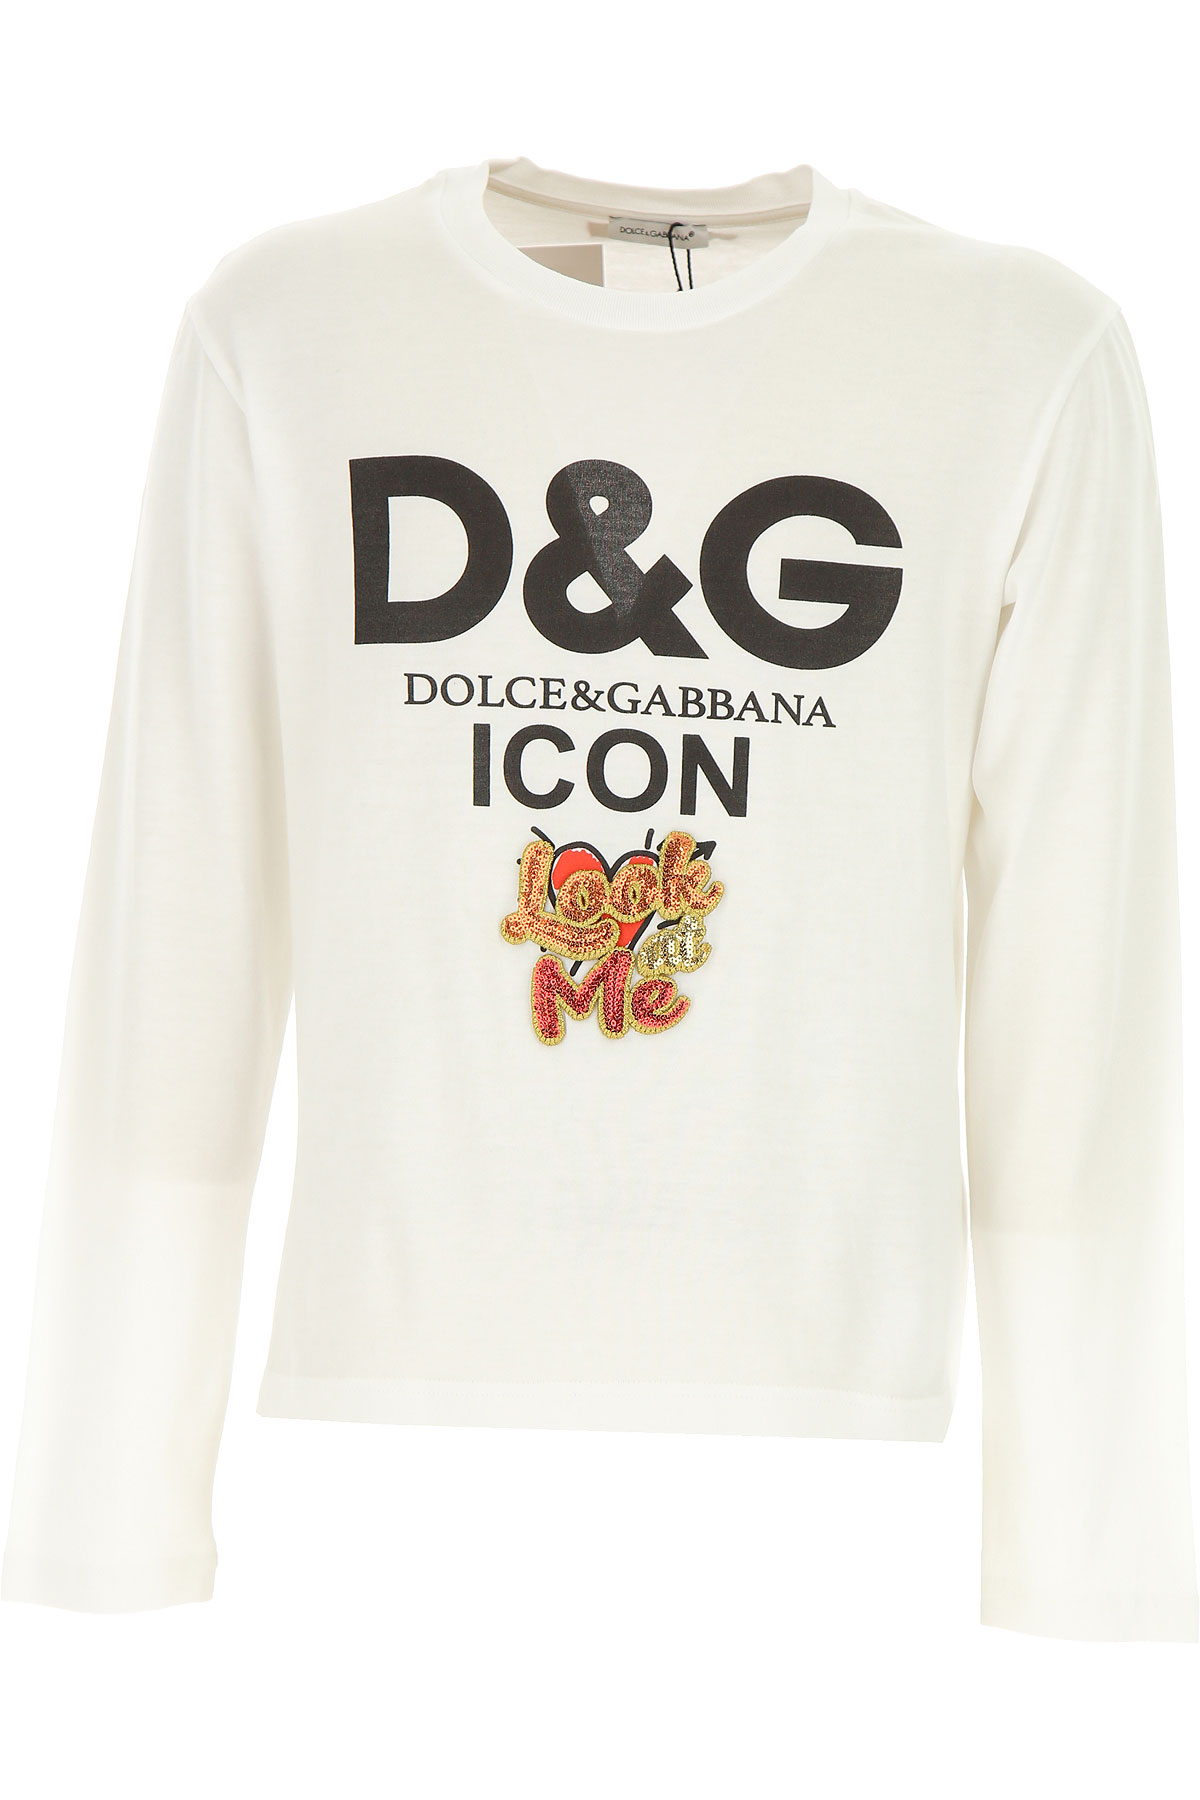 Dolce & Gabbana Kinder T-Shirt für Mädchen Günstig im Outlet Sale, Weiss, Baumwolle, 2017, 4Y 6Y